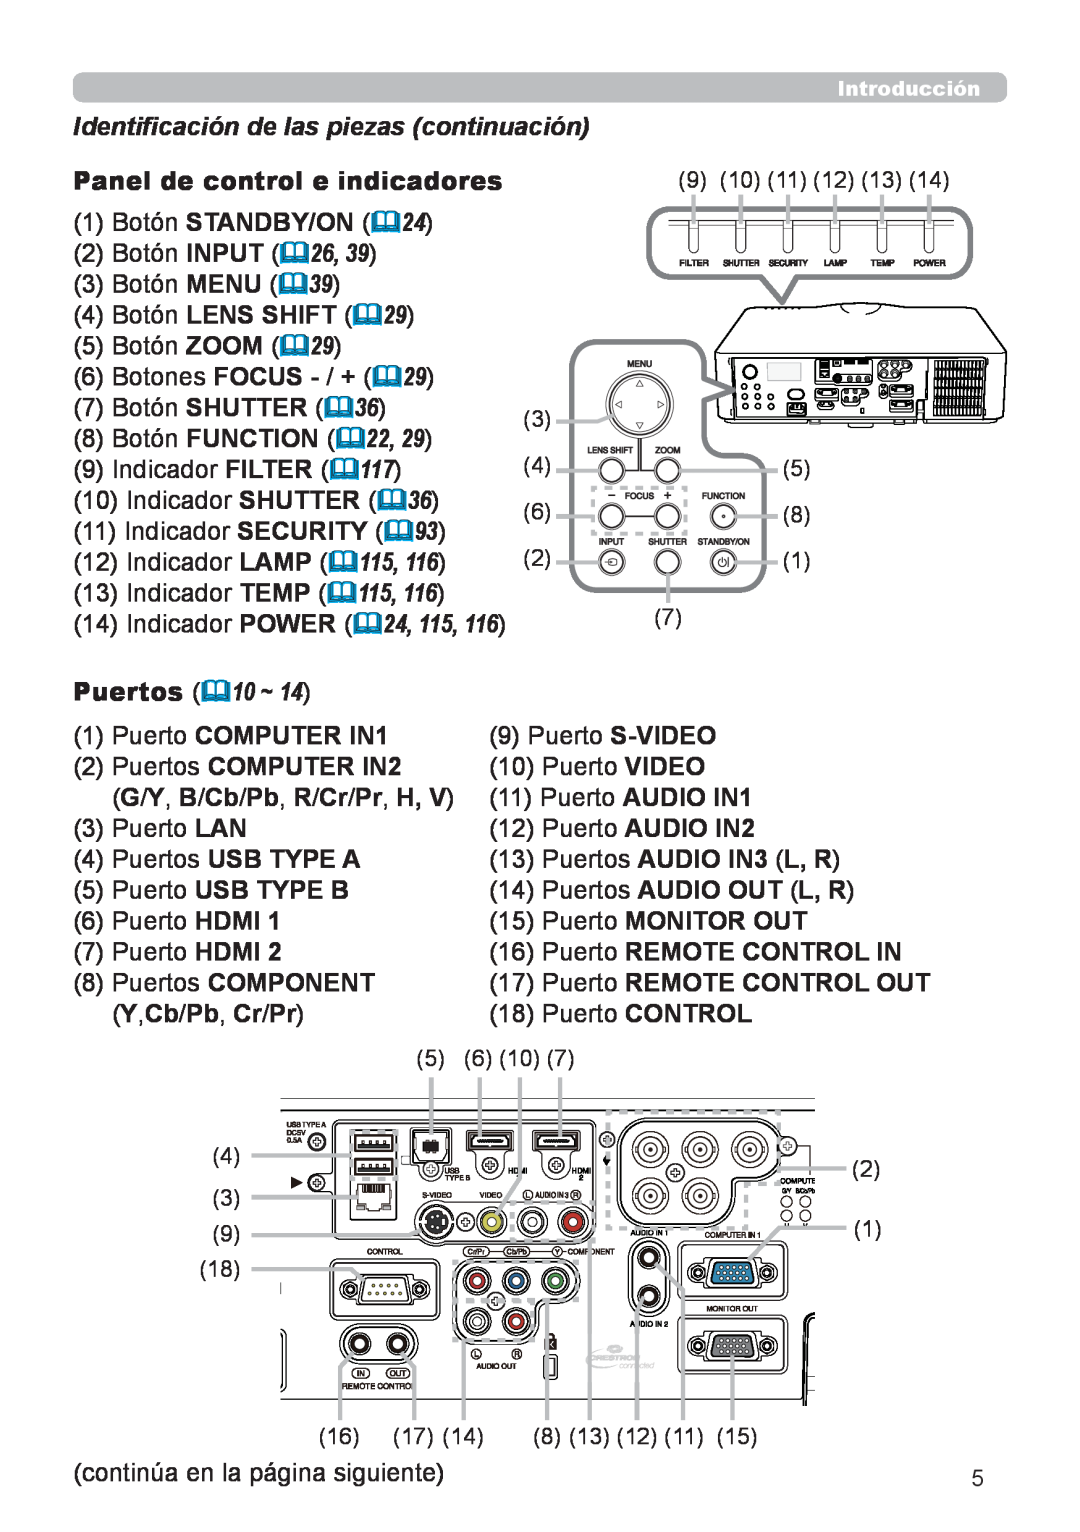 InFocus IN5134C, IN5135C Identificación de las piezas continuación, Panel de control e indicadores, Botón LENS SHIFT &29 